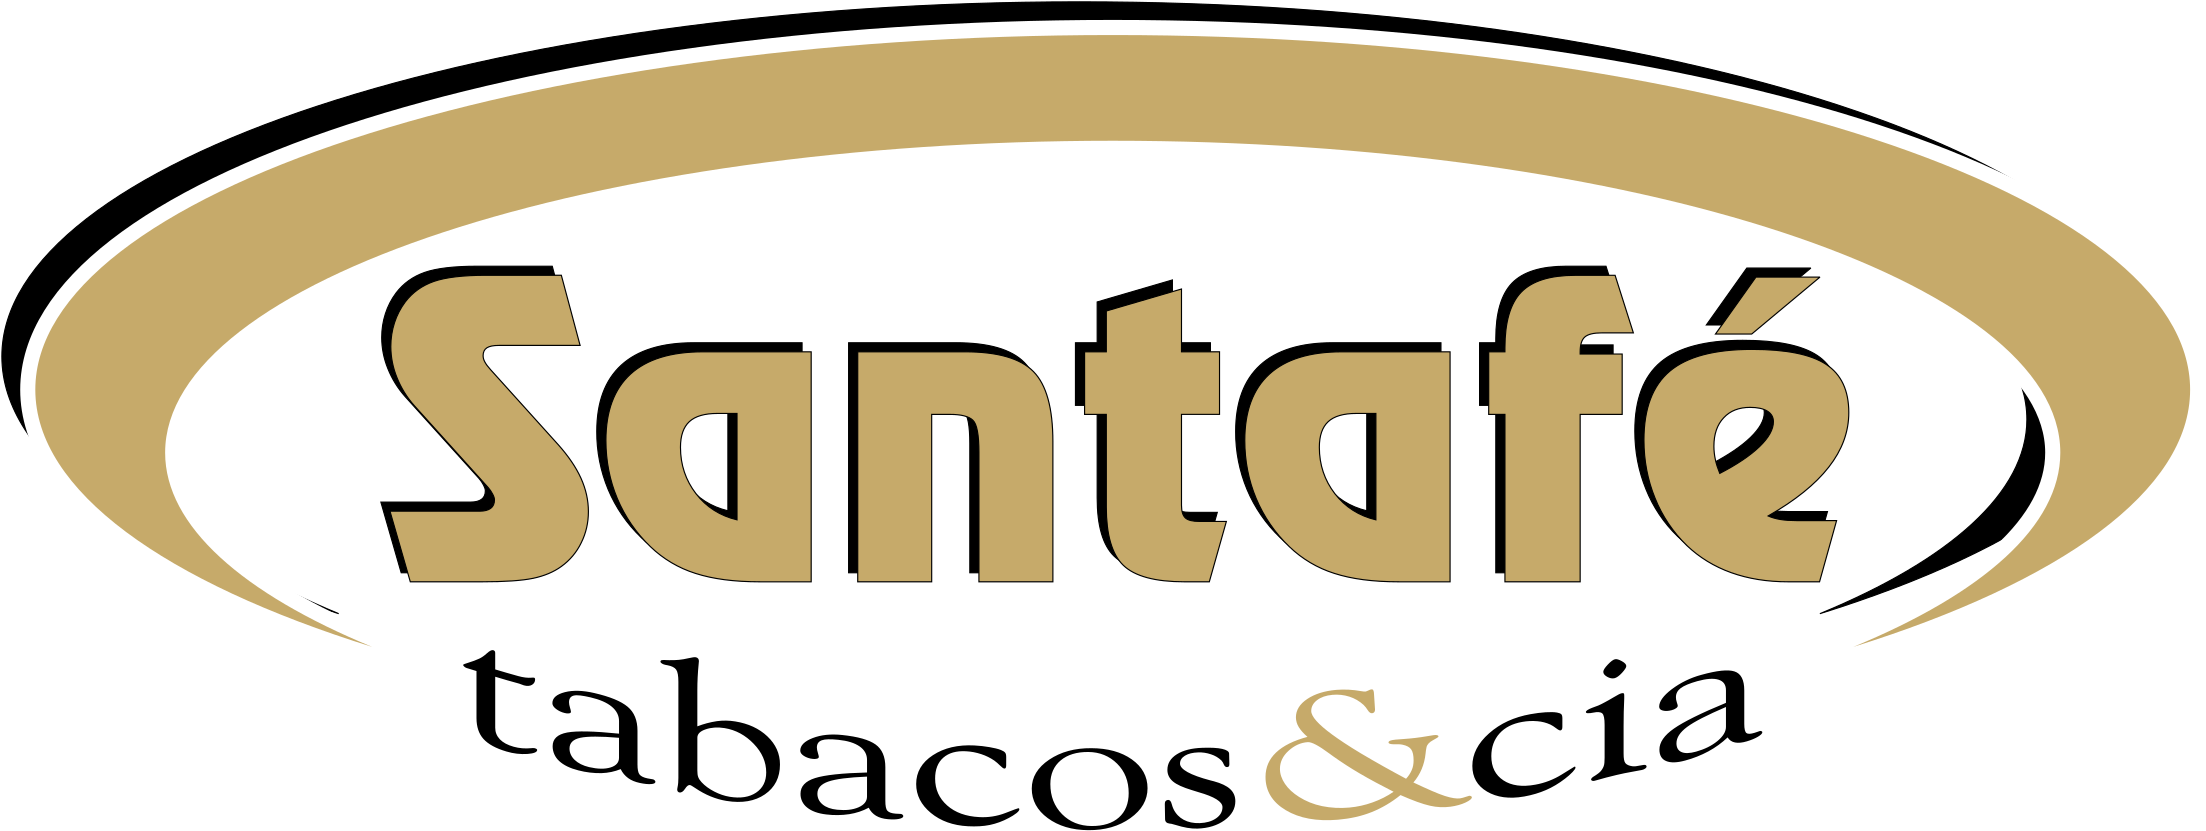 Santafe Tabacos & Cia Logo Png Transparent - Santa Fe (2400x2400), Png Download